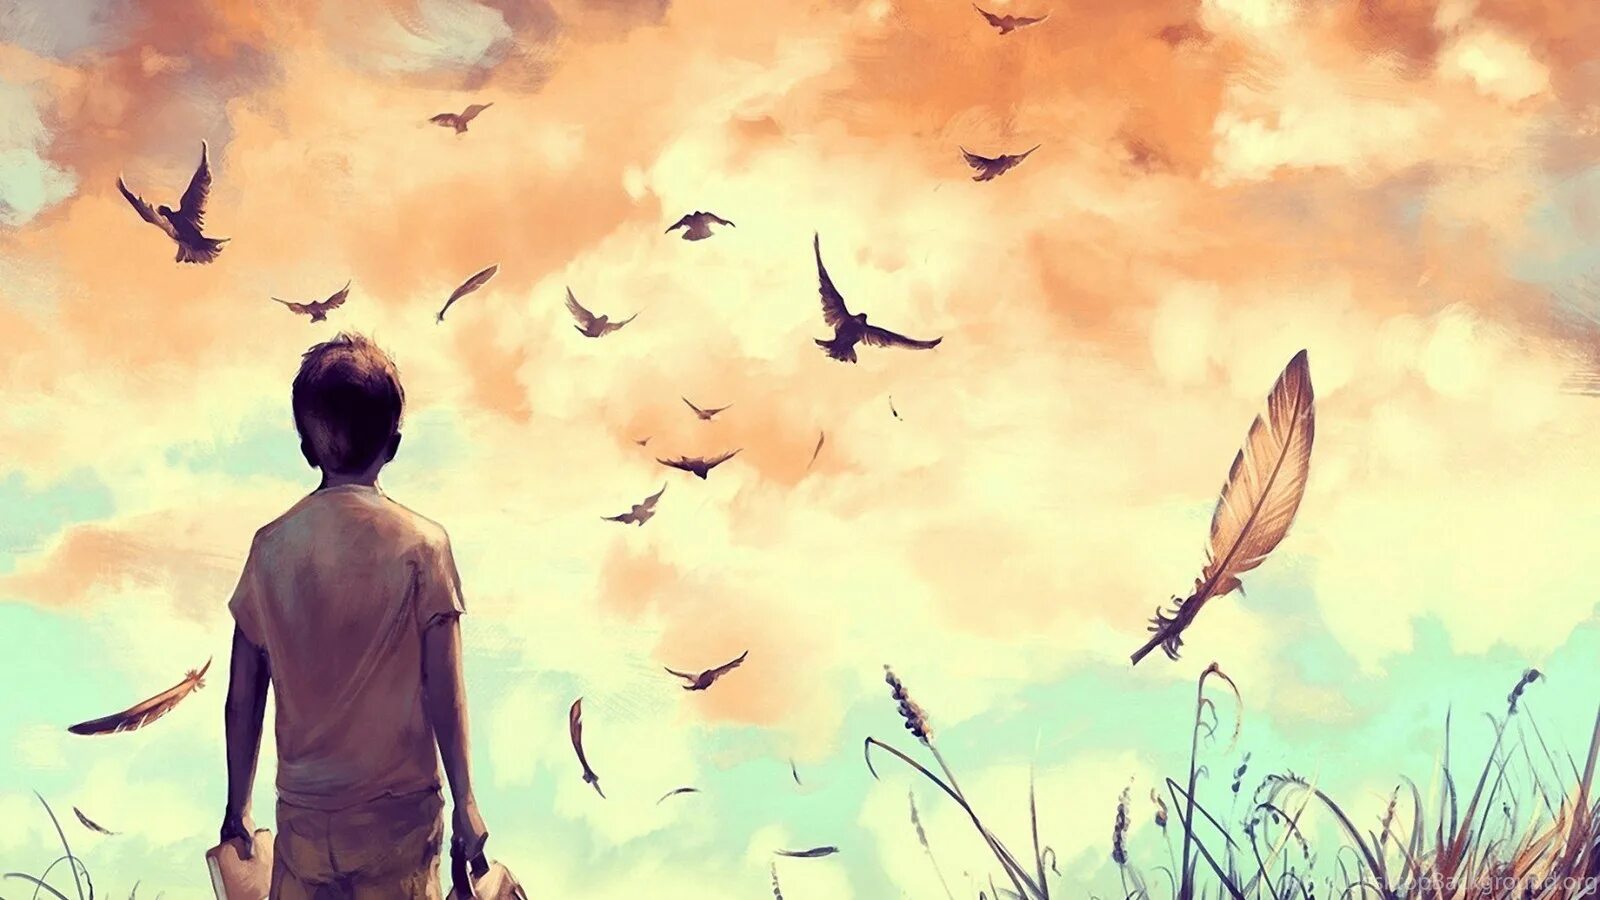 Dream boy текст. Птицы в небе арт. Одиночество арт. Человек птица. Арты со смыслом.